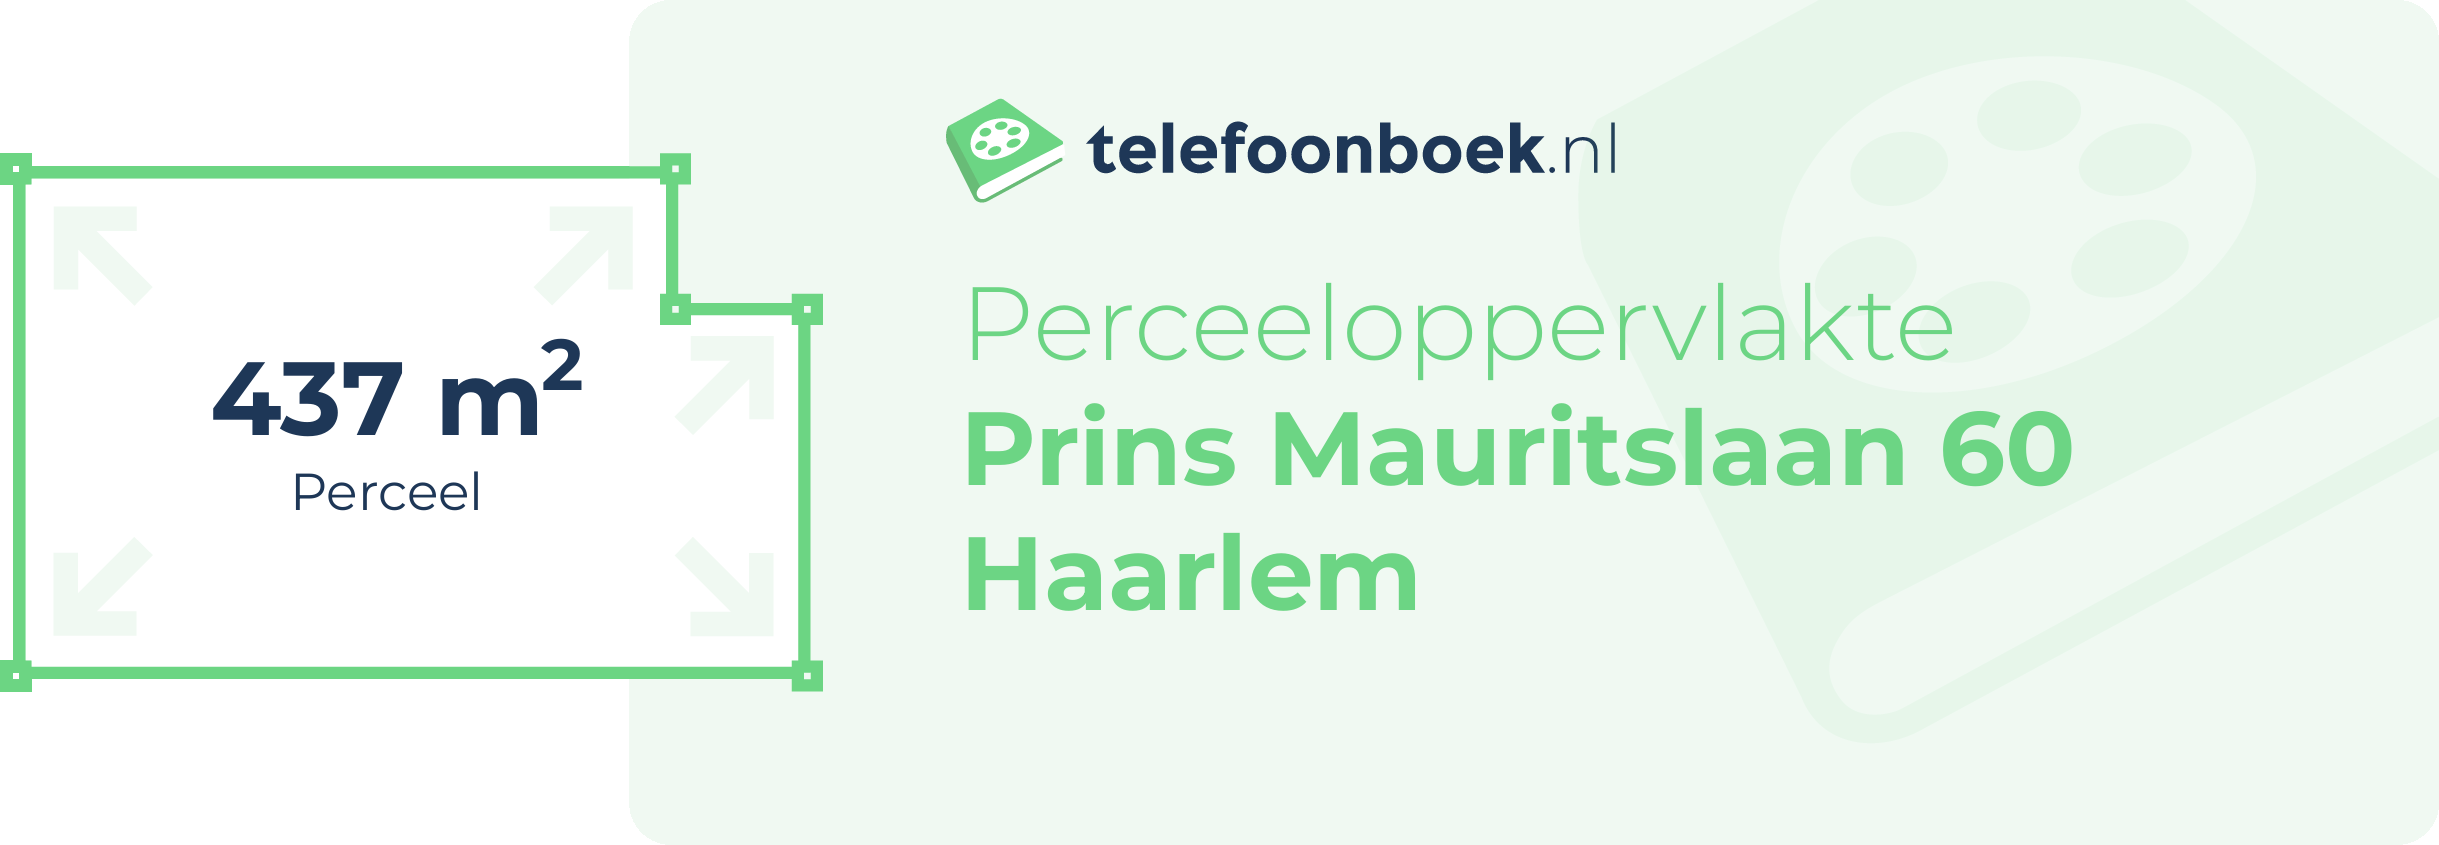 Perceeloppervlakte Prins Mauritslaan 60 Haarlem